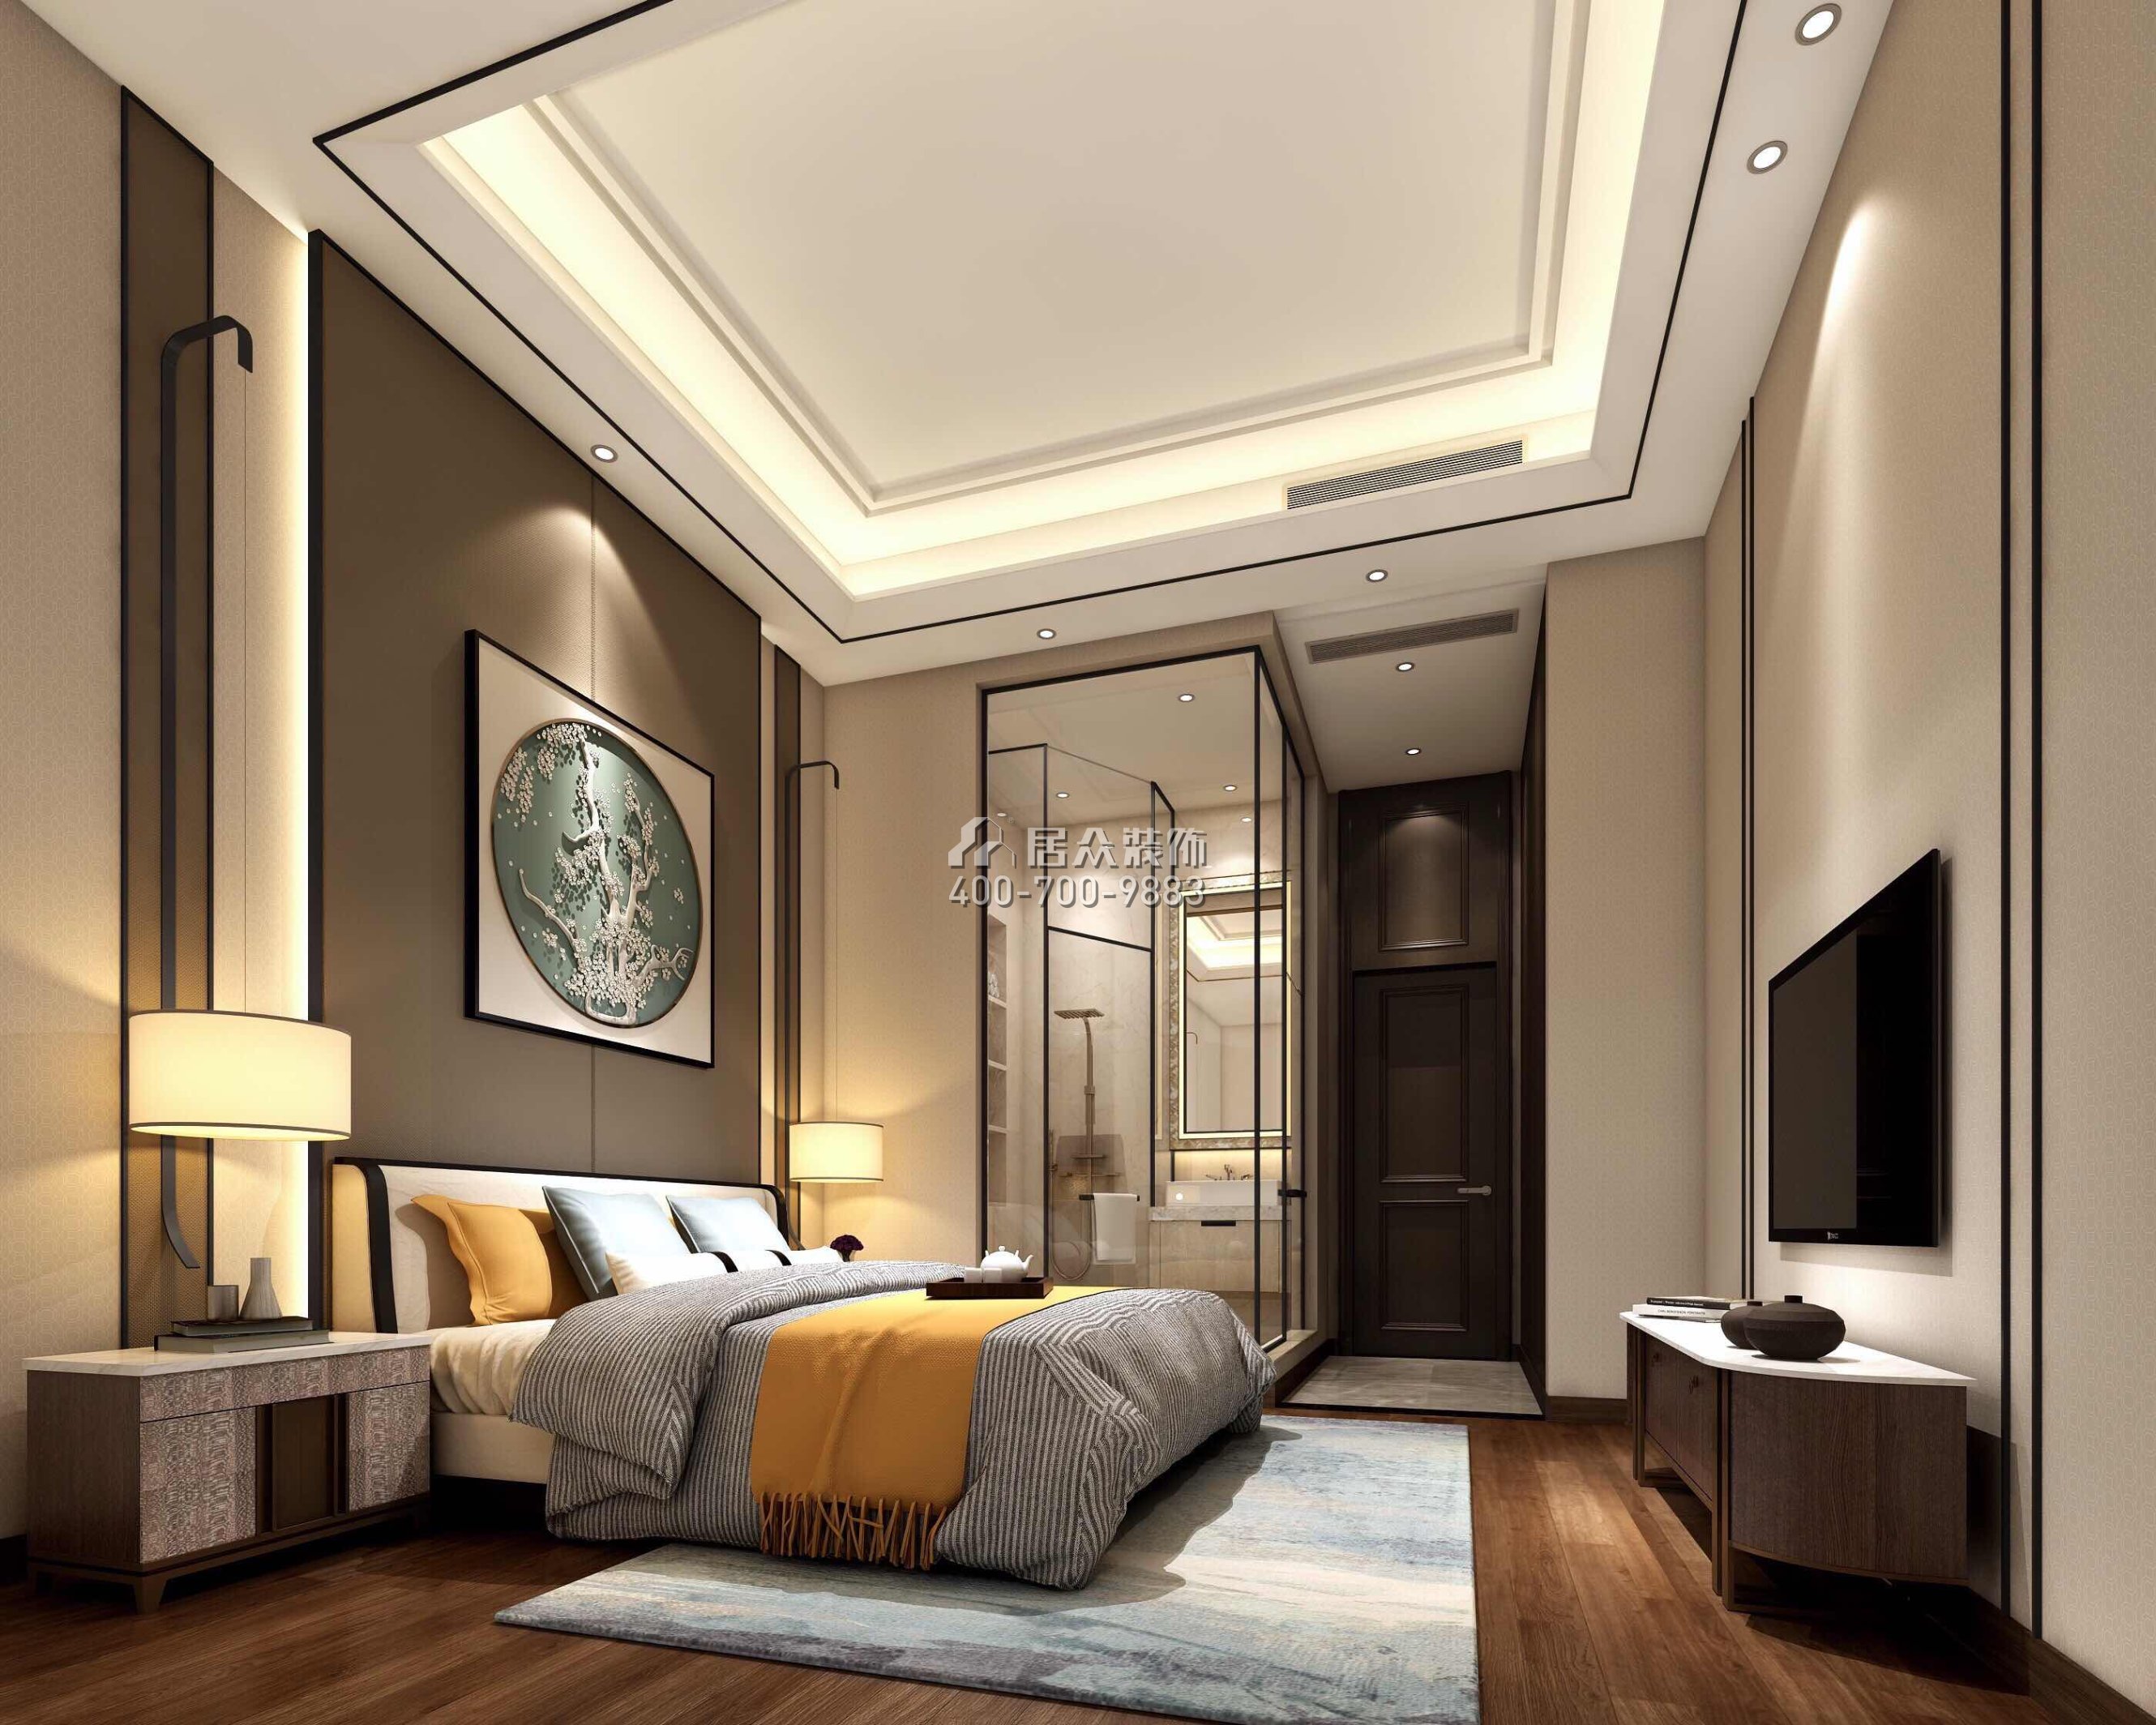 帝庭园300平方米中式风格1户型卧室装修效果图